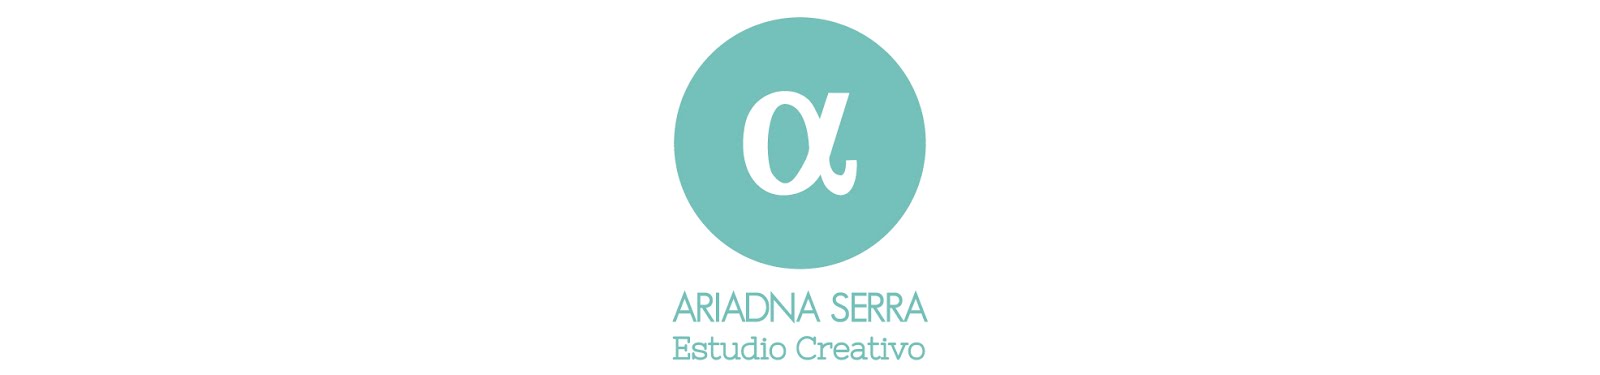 Ariadna Serra - Estudio Creativo